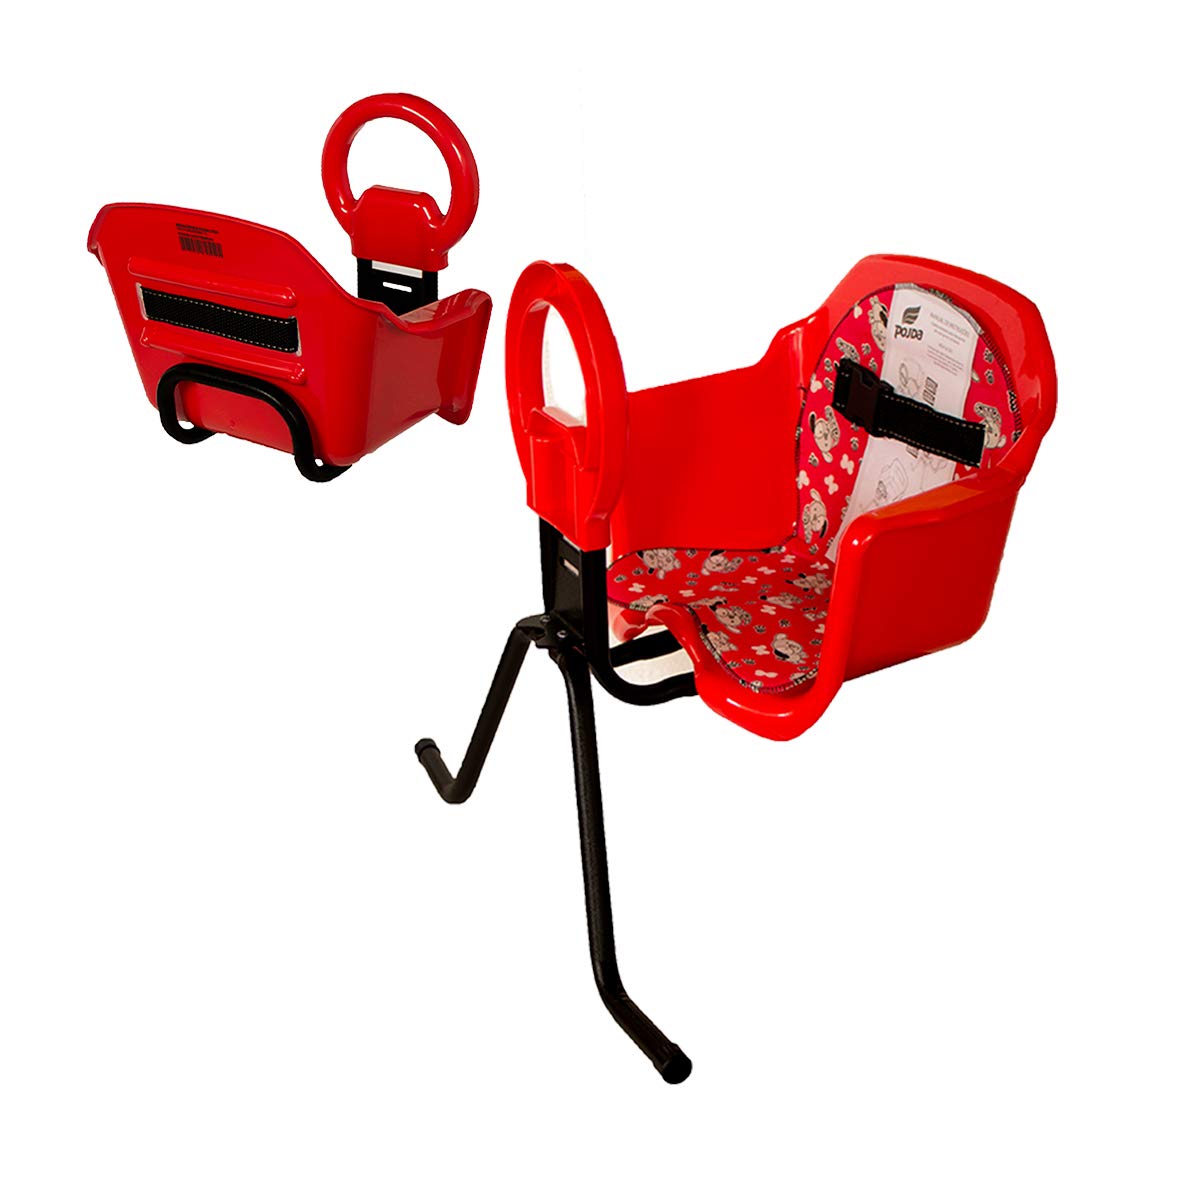 Cadeira De Bicicleta Dianteira Frontal Cadeirinha luxo (Vermelho)